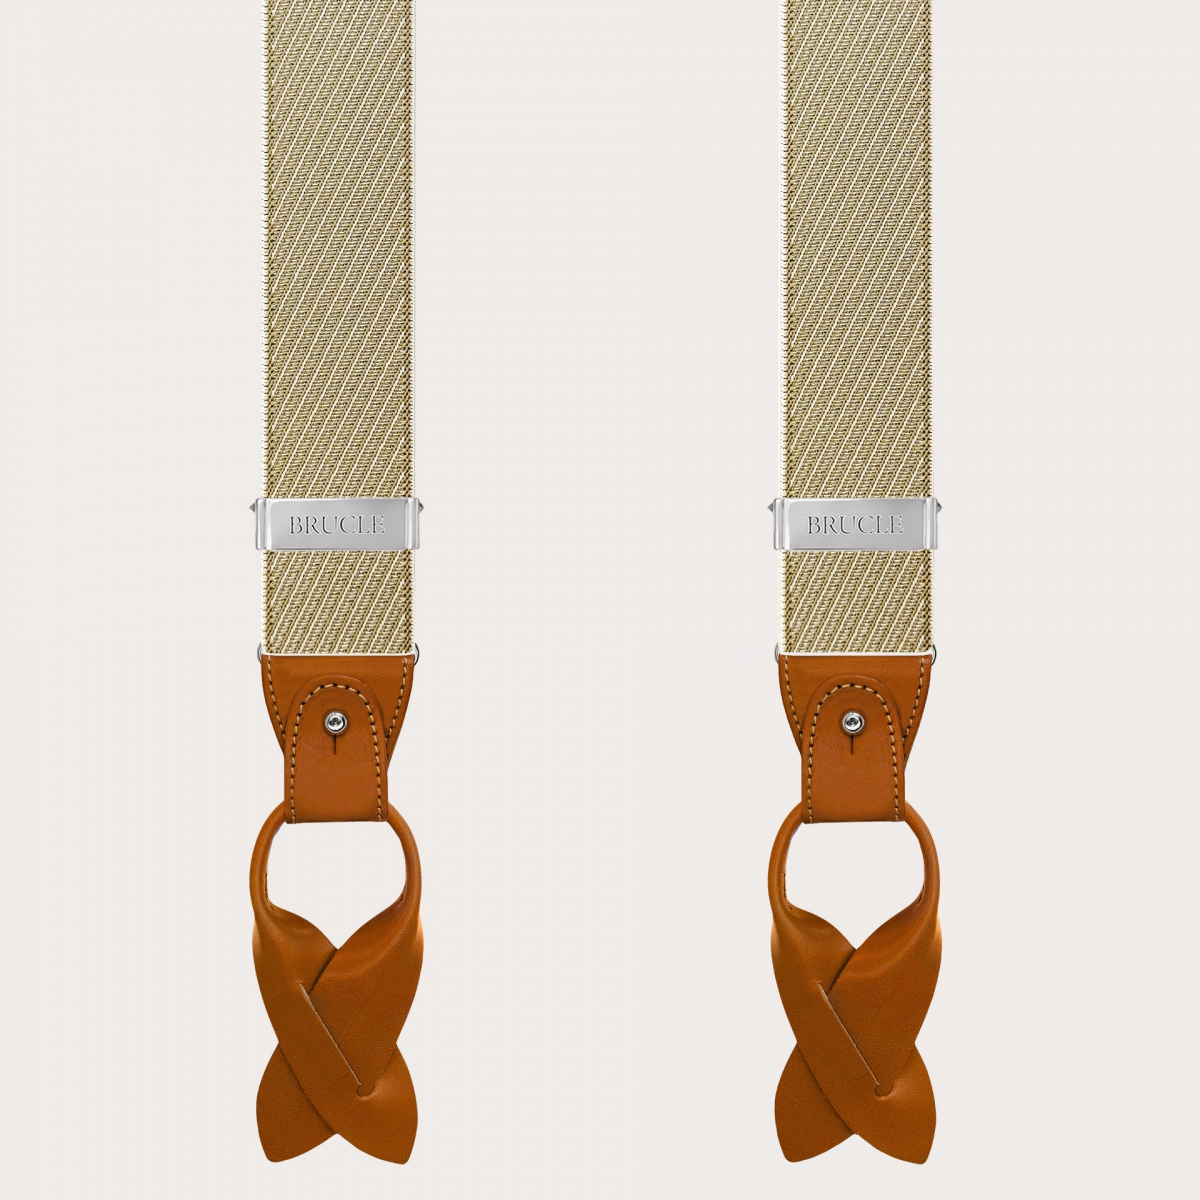 Elegante Herren Hosenträger in Beige und Gold mit schrägen Streifen für Knöpfe oder Clips